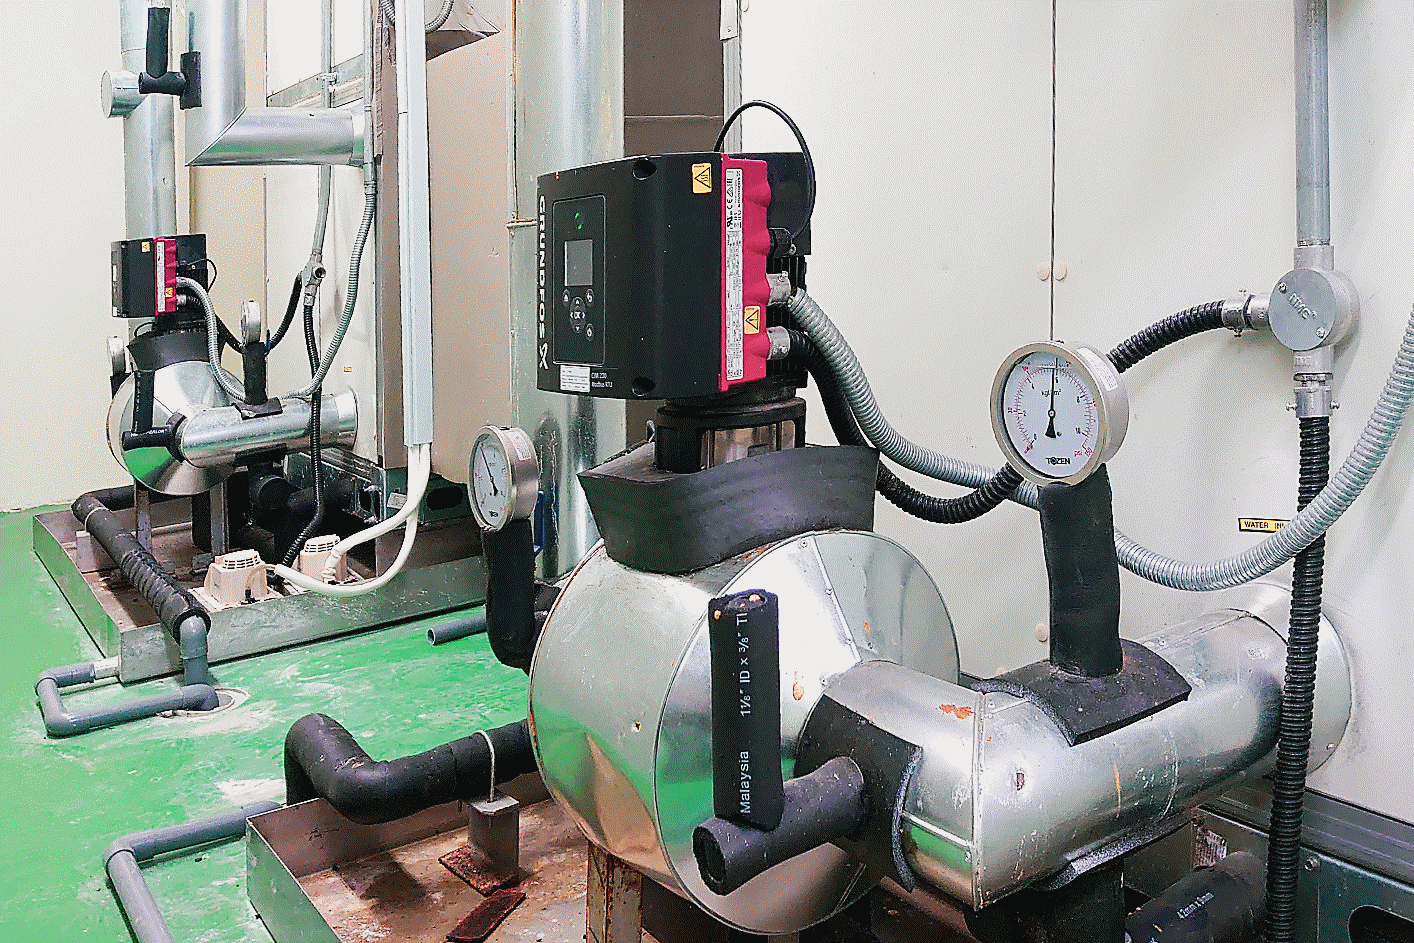 Fotografija kompaktnih pumpi koje se upotrebljavaju za pogon visokoučinkovitog rashladnog postrojenja